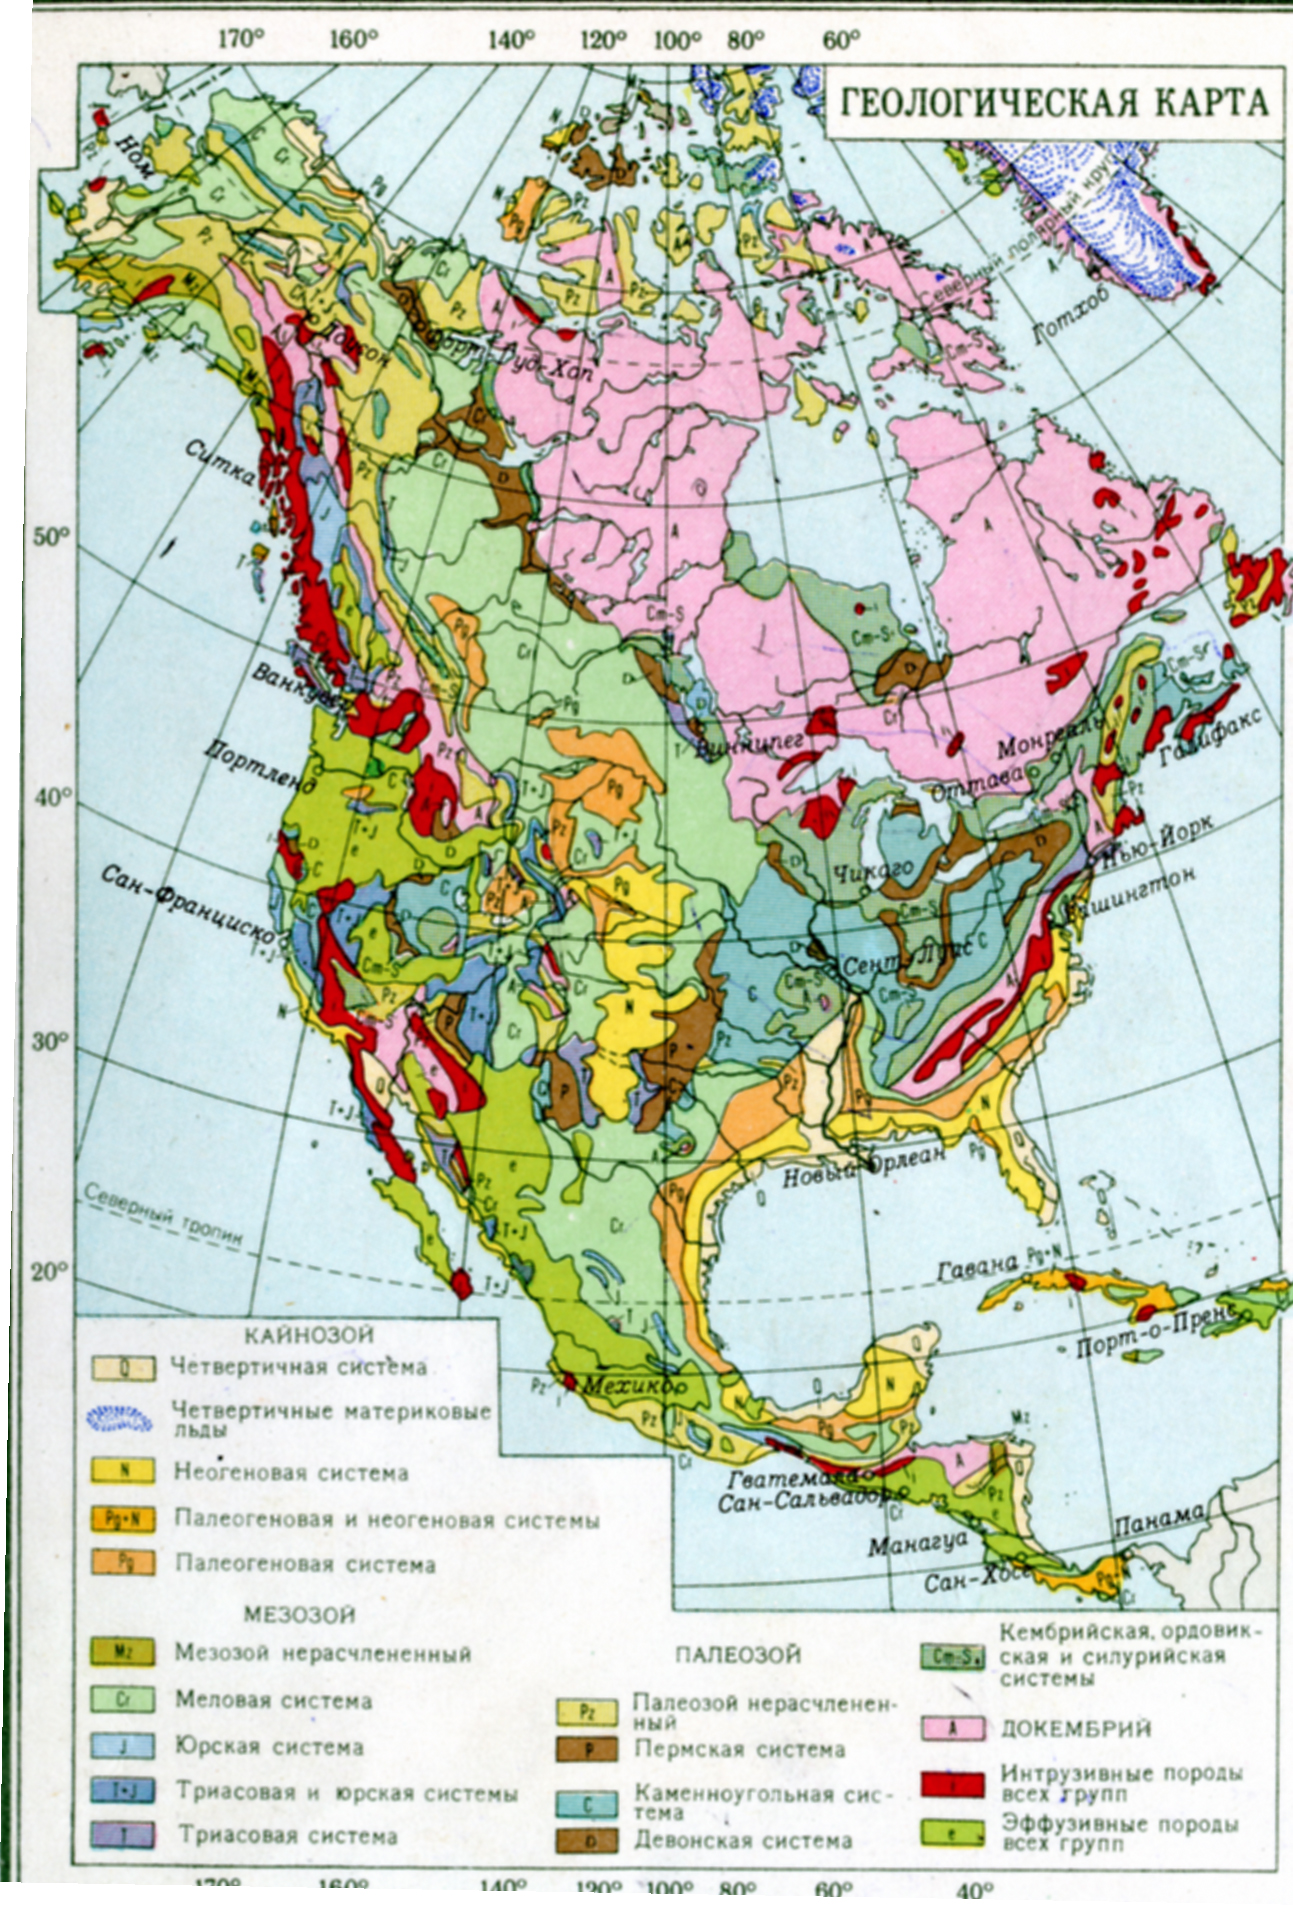 Тектонические структуры северной америки